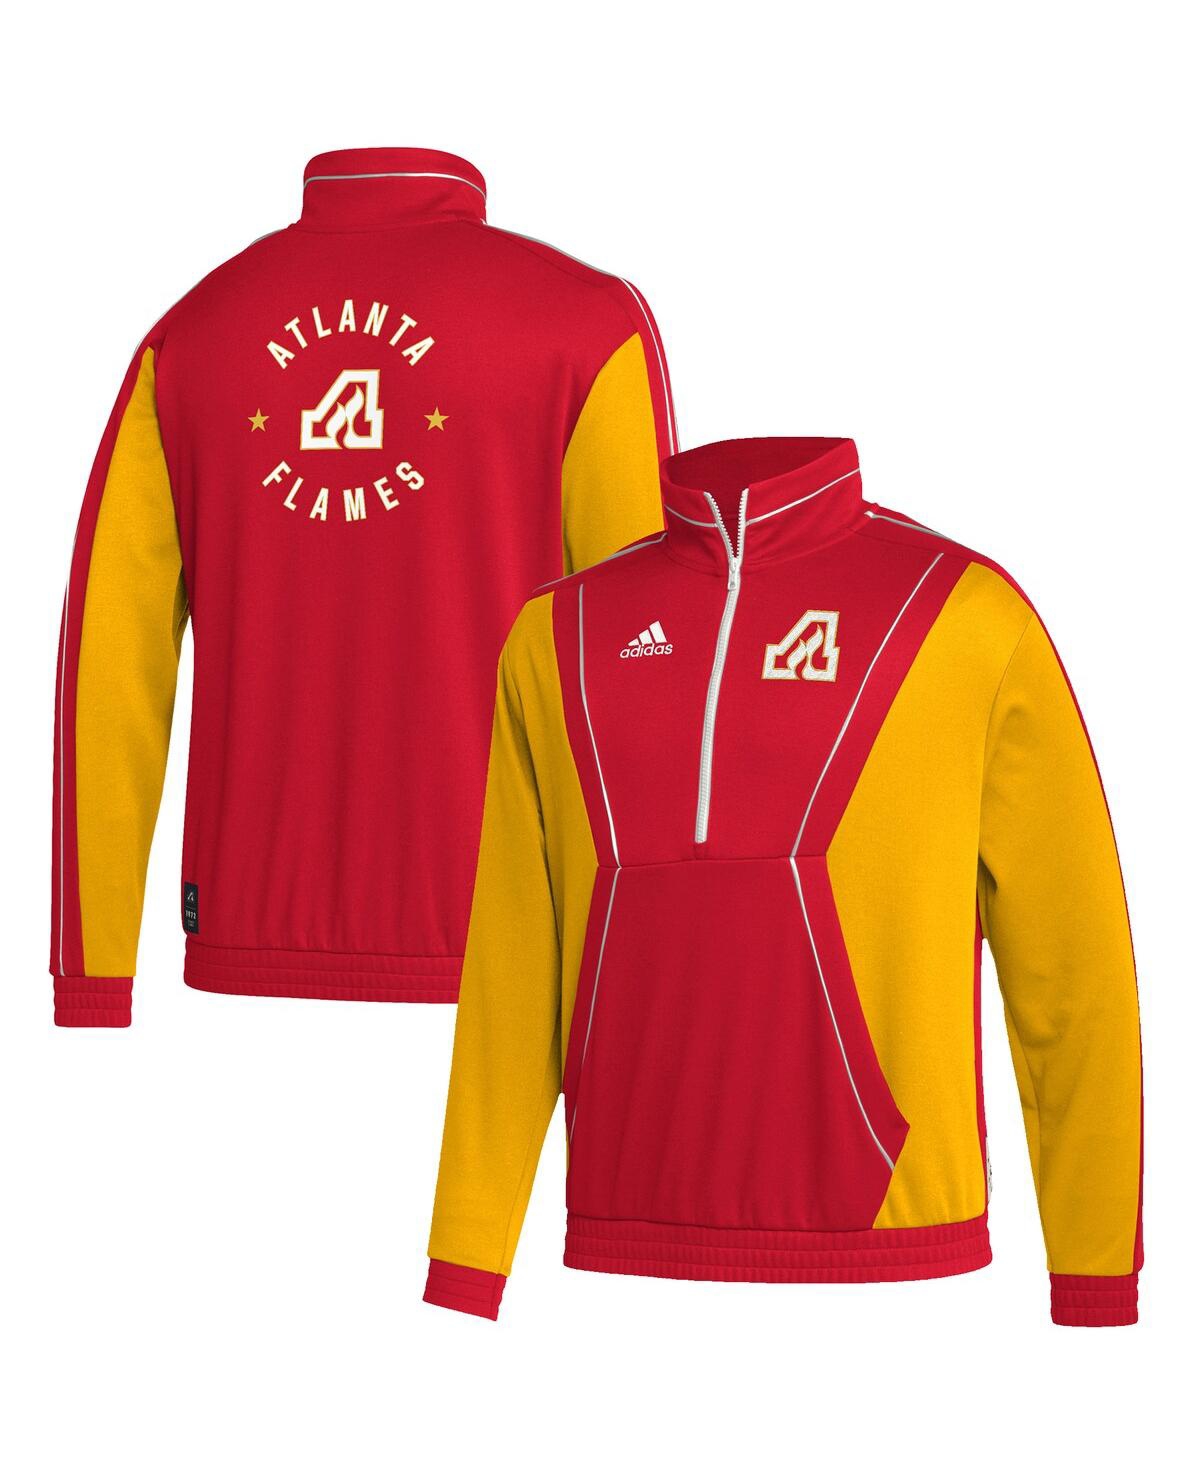 Shop Adidas Originals Men's Adidas Red Atlanta Flames Team Classics Half-zip Jacket